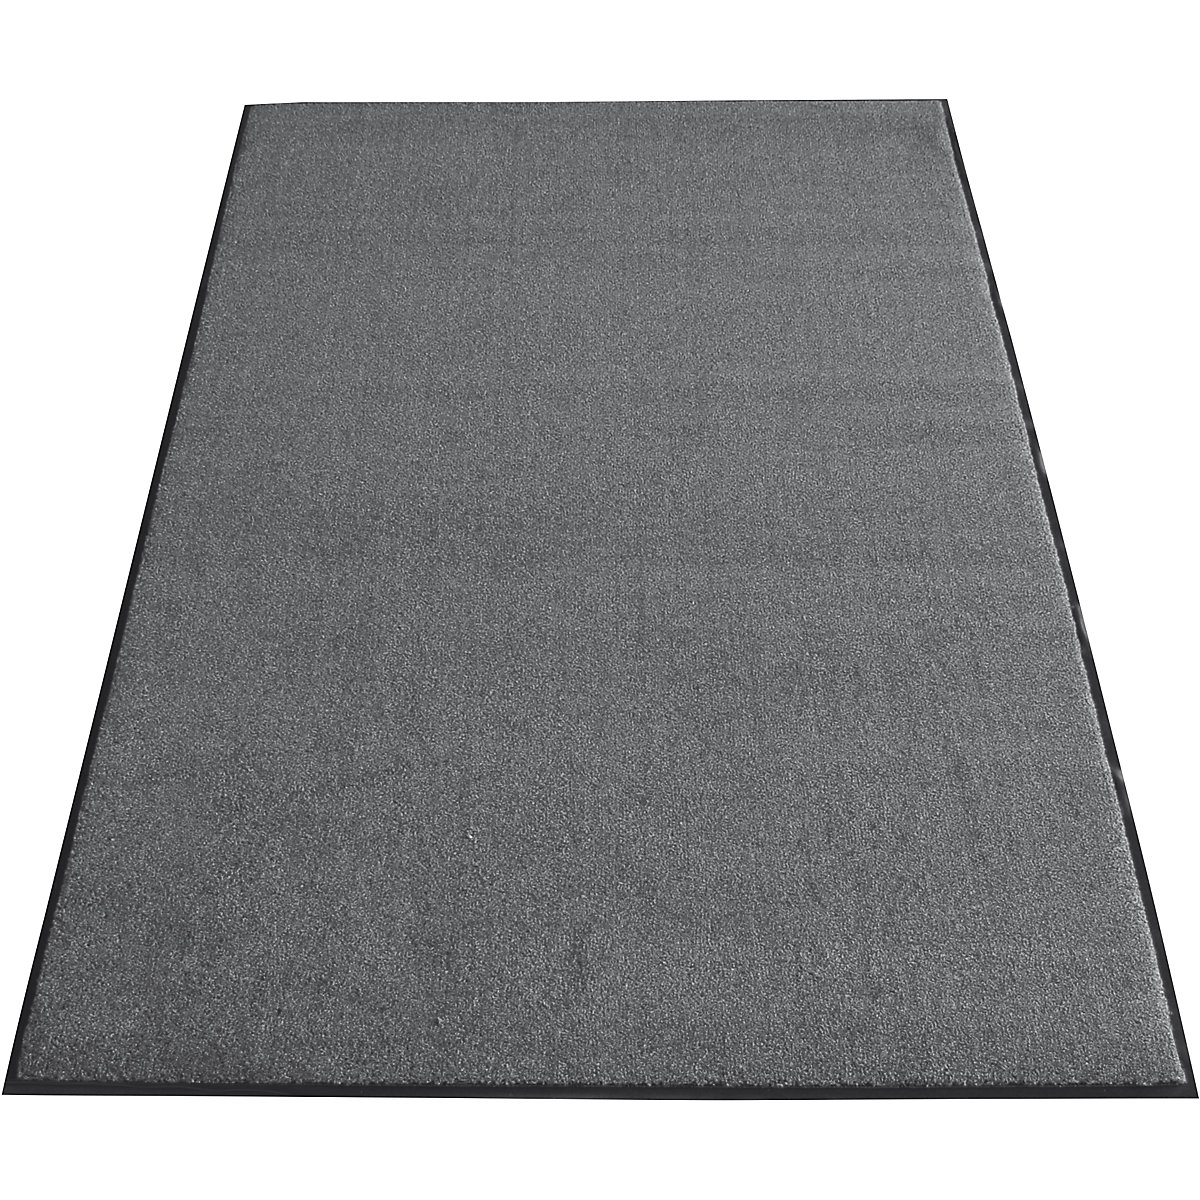 EAZYCARE AQUA entrance matting, LxW 2400 x 1200 mm, grey